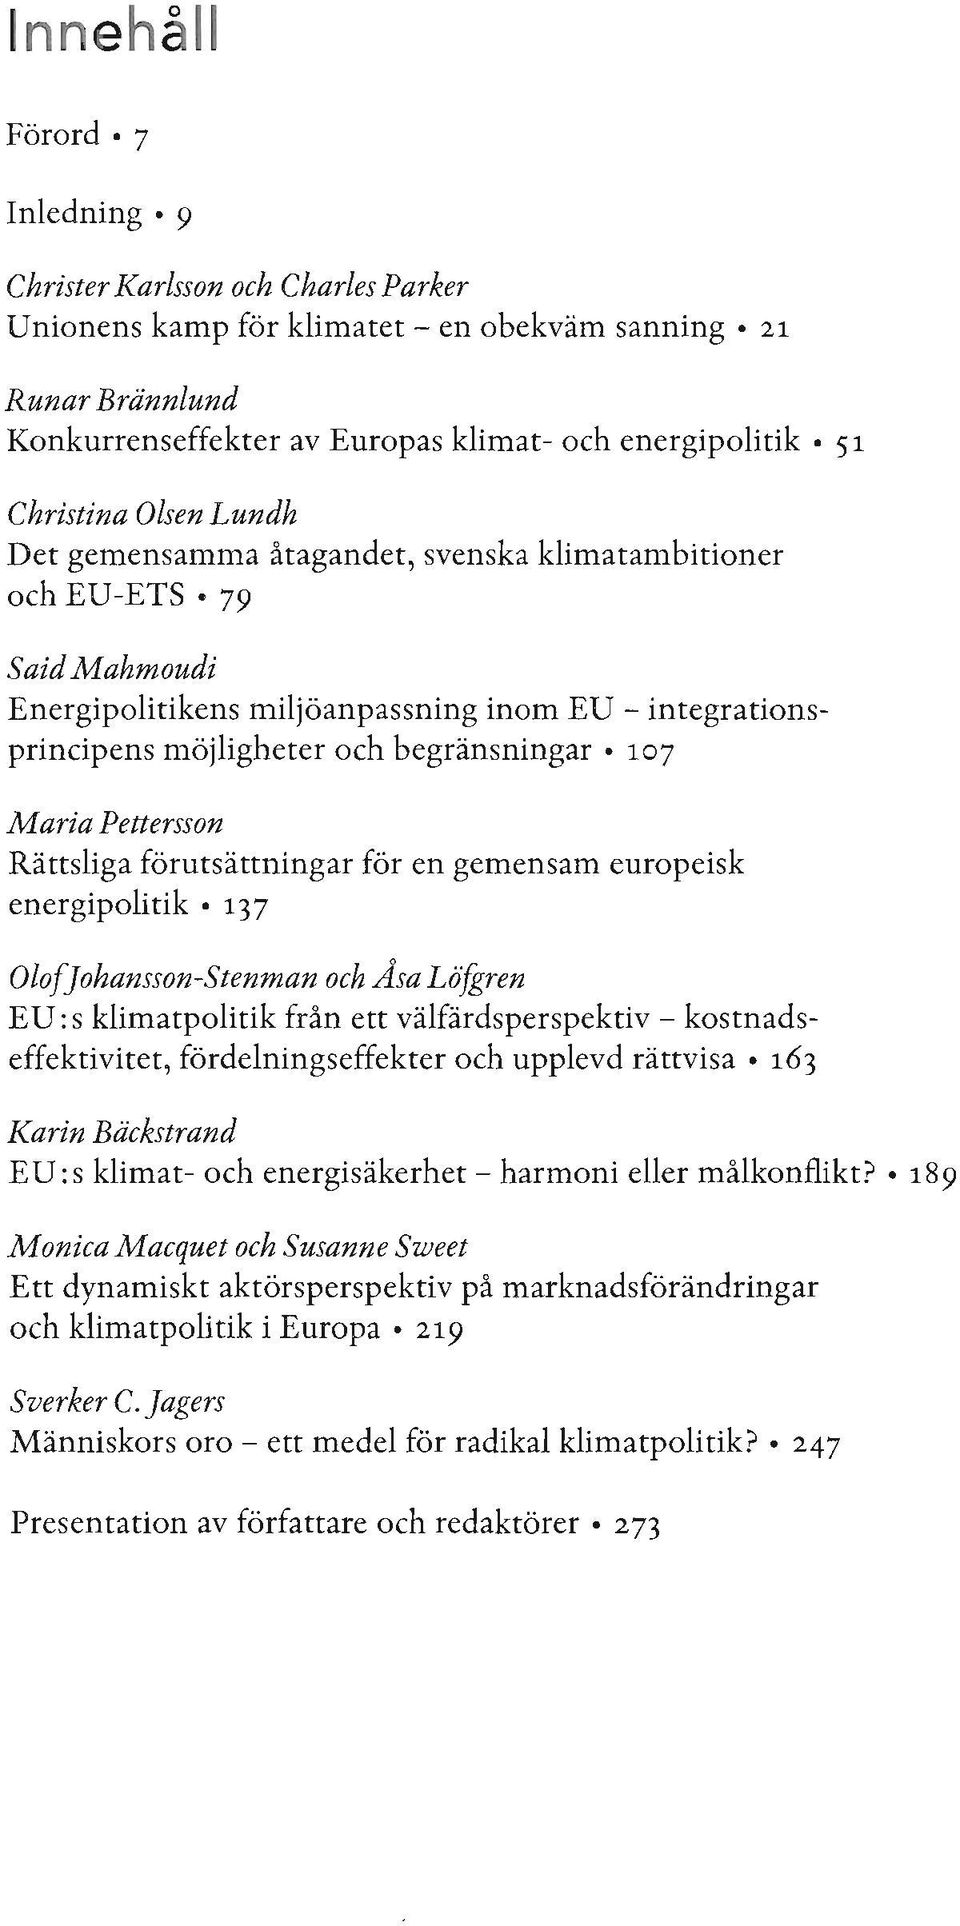 107 Maria Pettersson Rättsliga förutsättningar för en gemensam europeisk energipolitik.